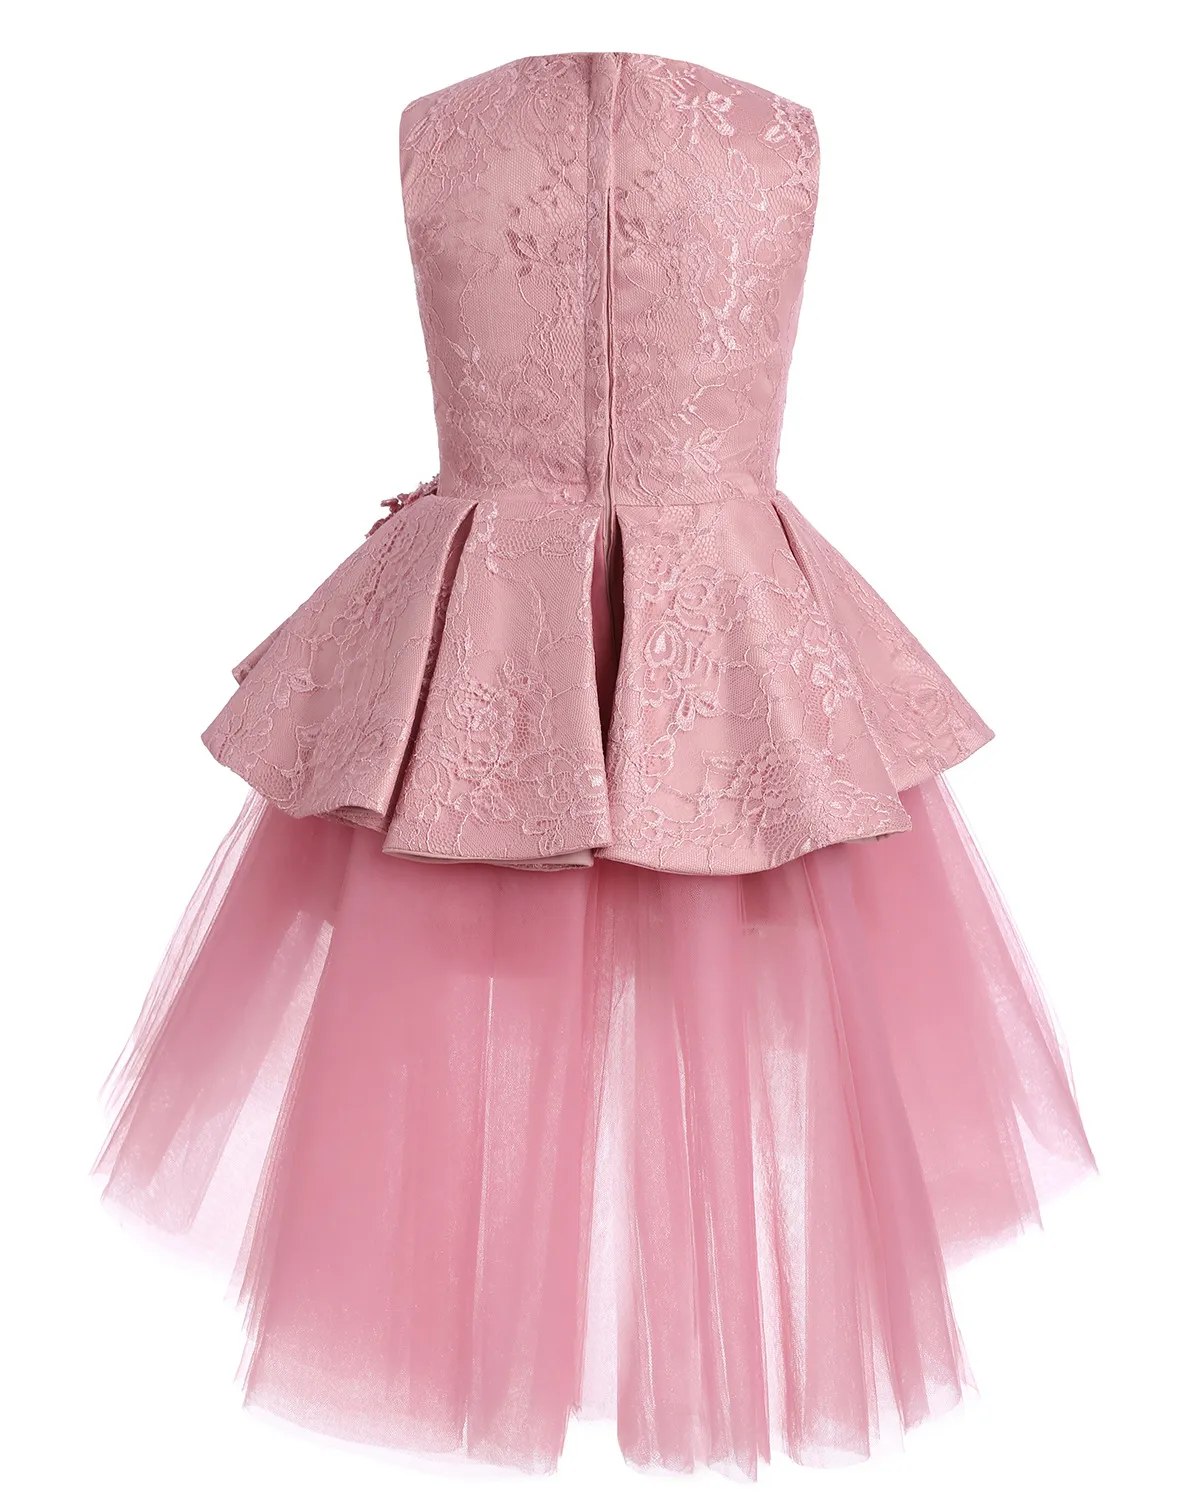 Słodkie różowe sukienki klejnotowe klejnonki koronki bez rękawów koronki krótkie warstwowe ruffles flower dziewczyny tiul spódnica urodzinowy prawdziwy obraz